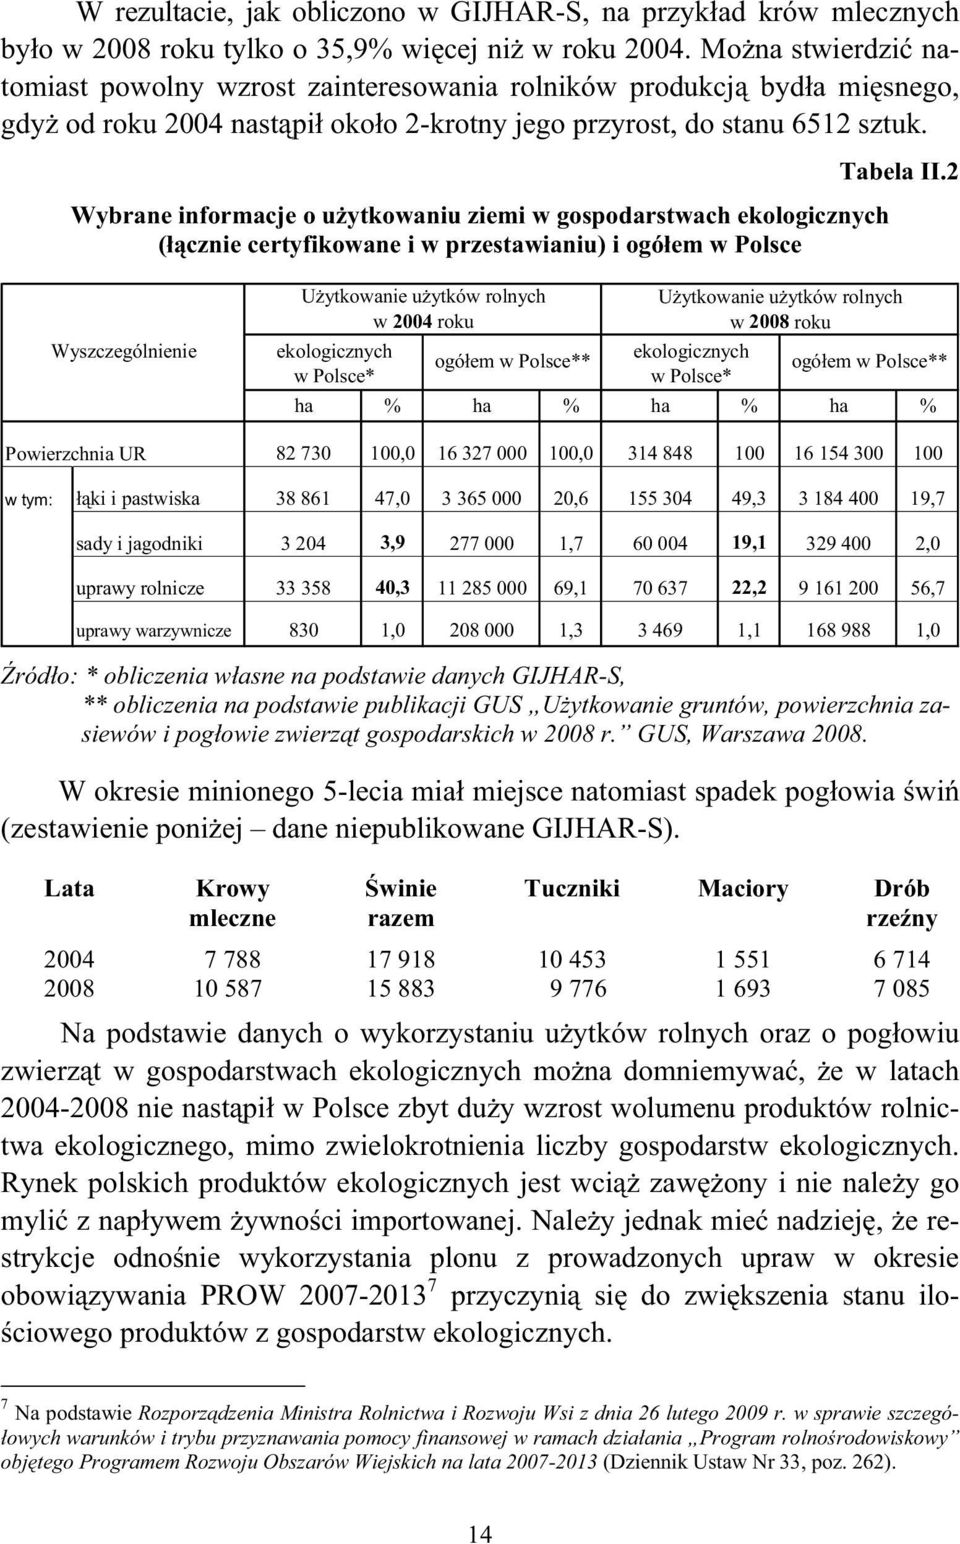 2 Wybrane informacje o użytkowaniu ziemi w gospodarstwach ekologicznych (łącznie certyfikowane i w przestawianiu) i ogółem w Polsce Wyszczególnienie Powierzchnia UR Użytkowanie użytków rolnych w 2004